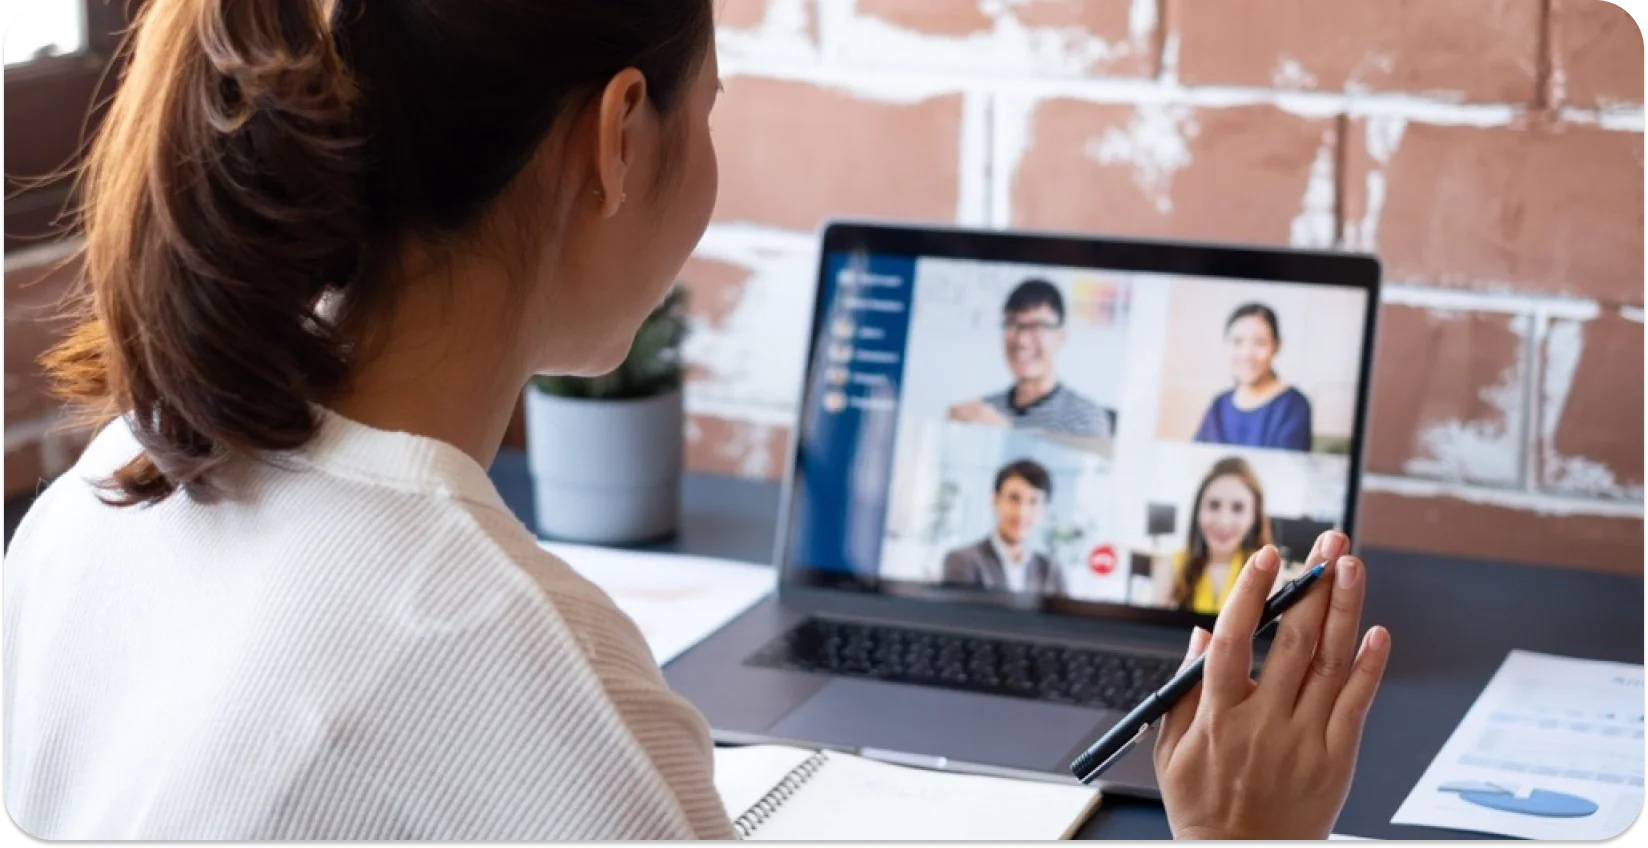 Professionista impegnato in una riunione virtuale con i colleghi sullo schermo di un laptop.